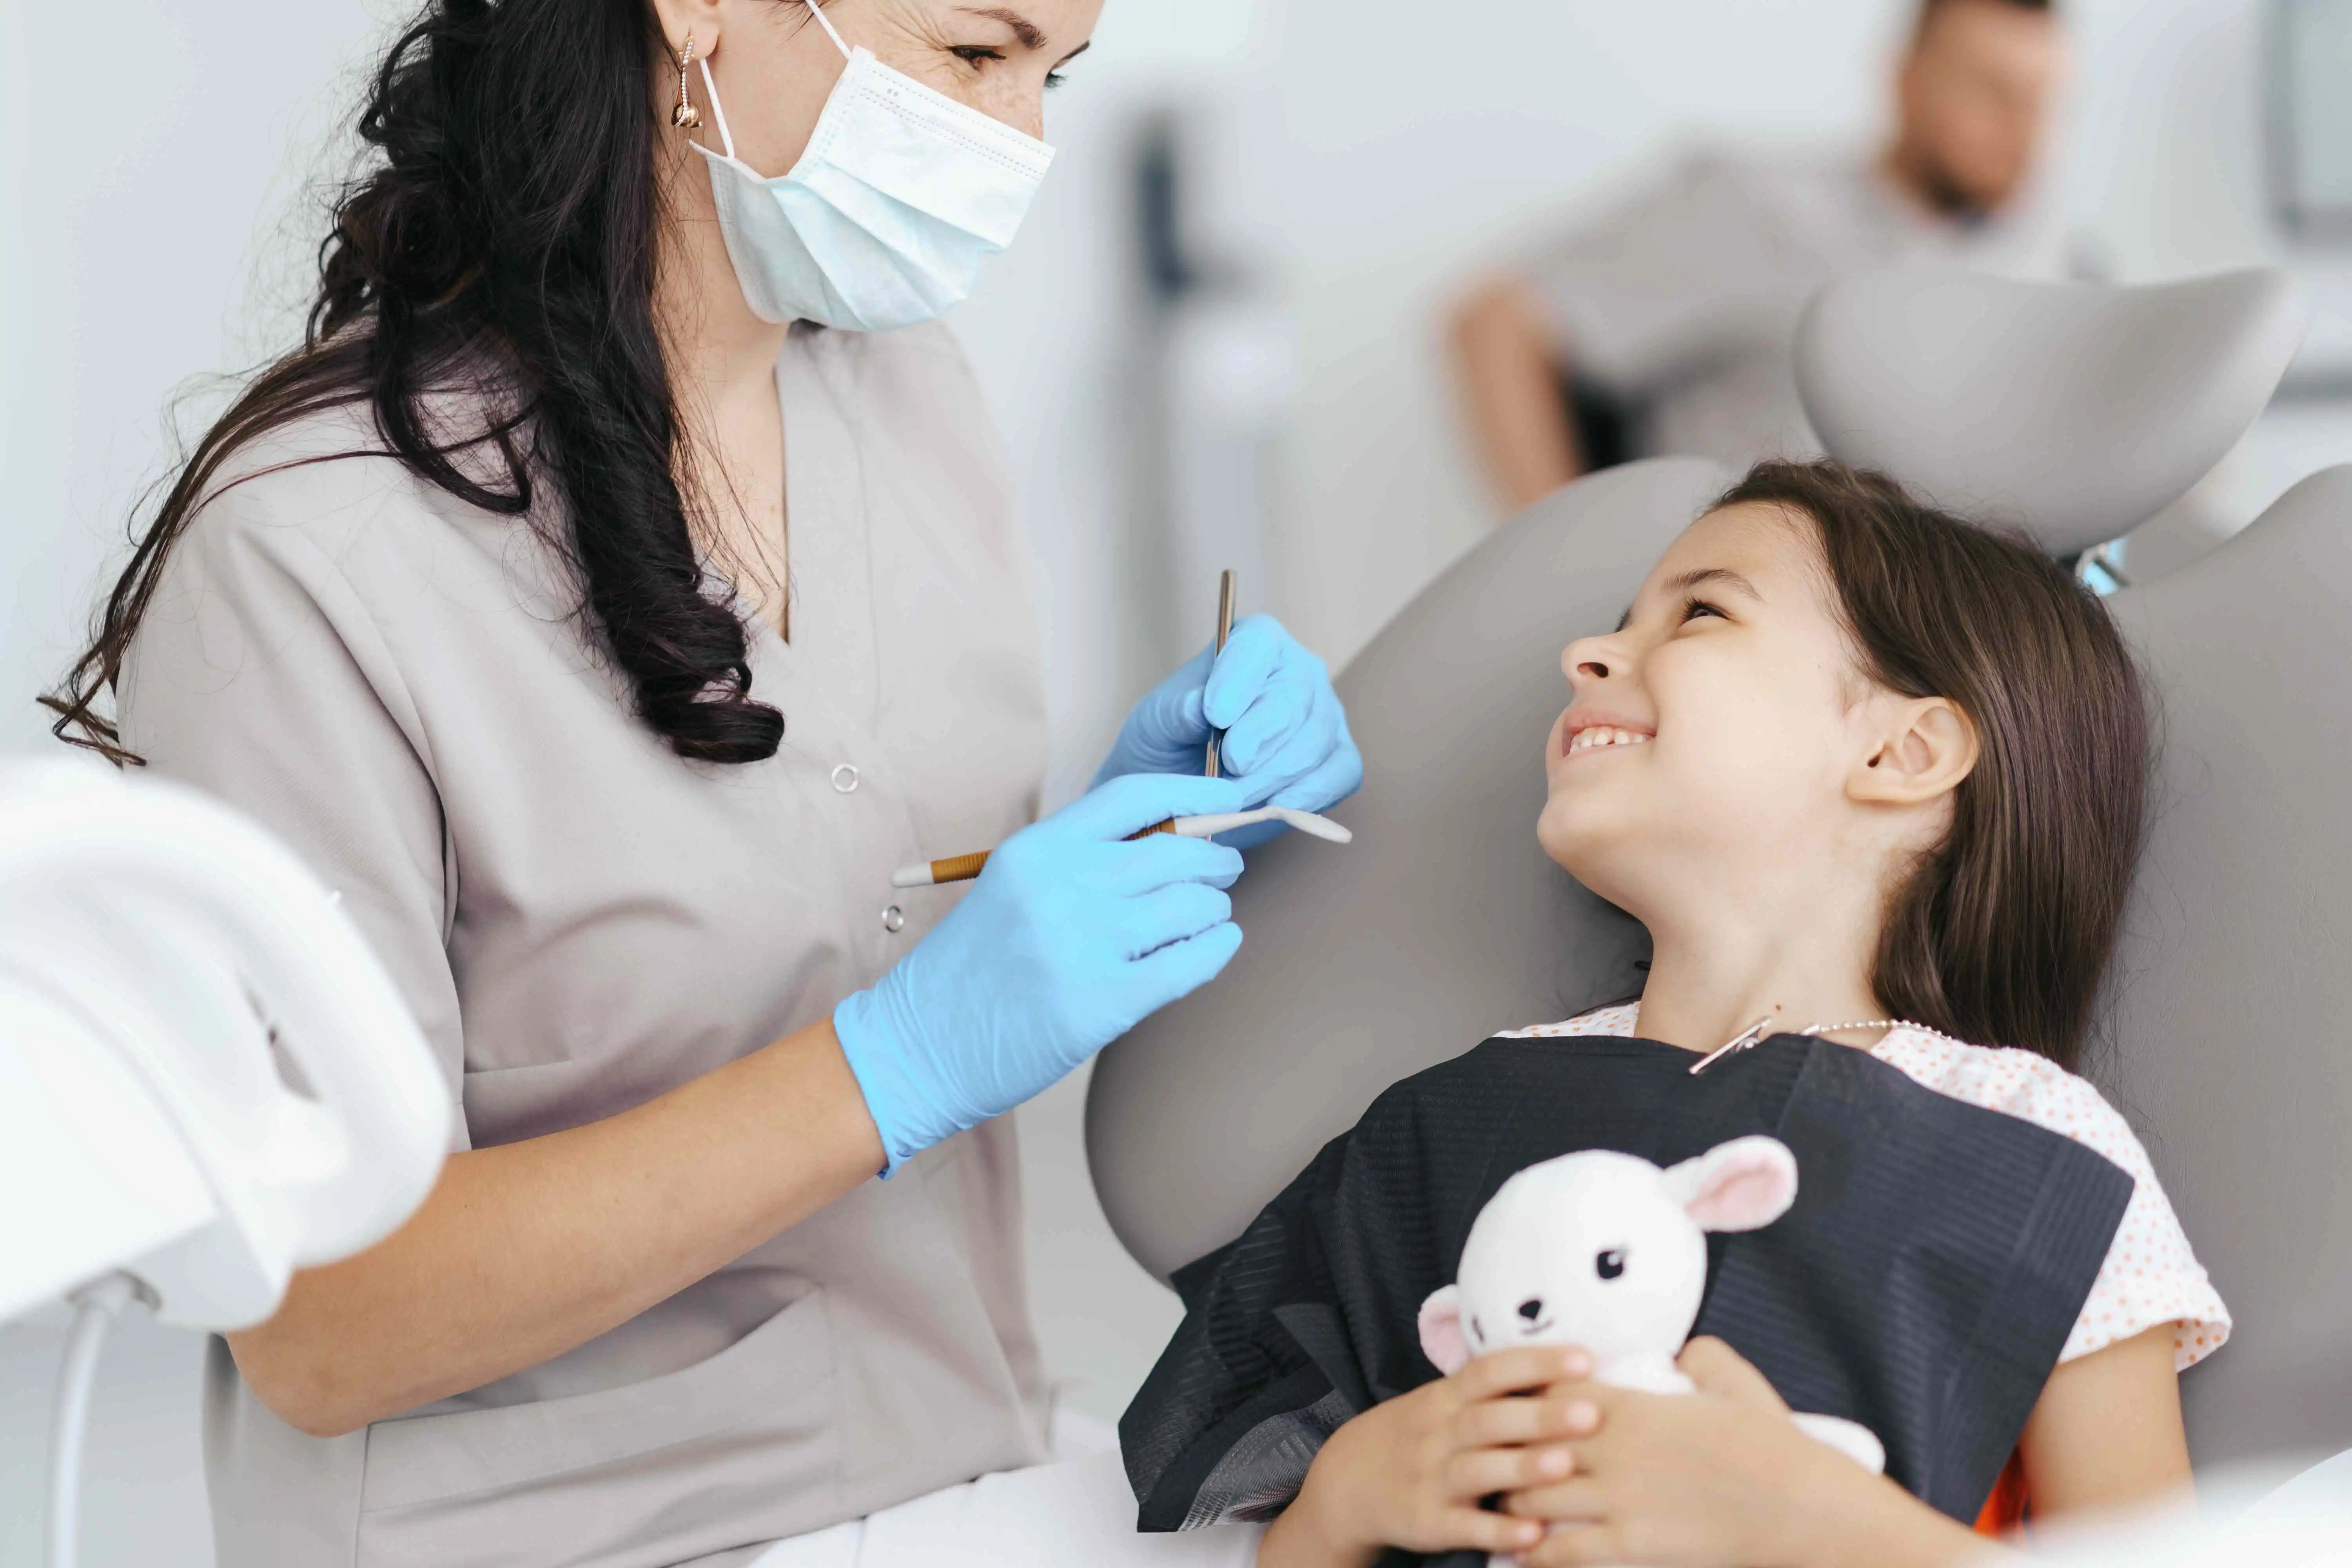 What is a Pediatric Dentist